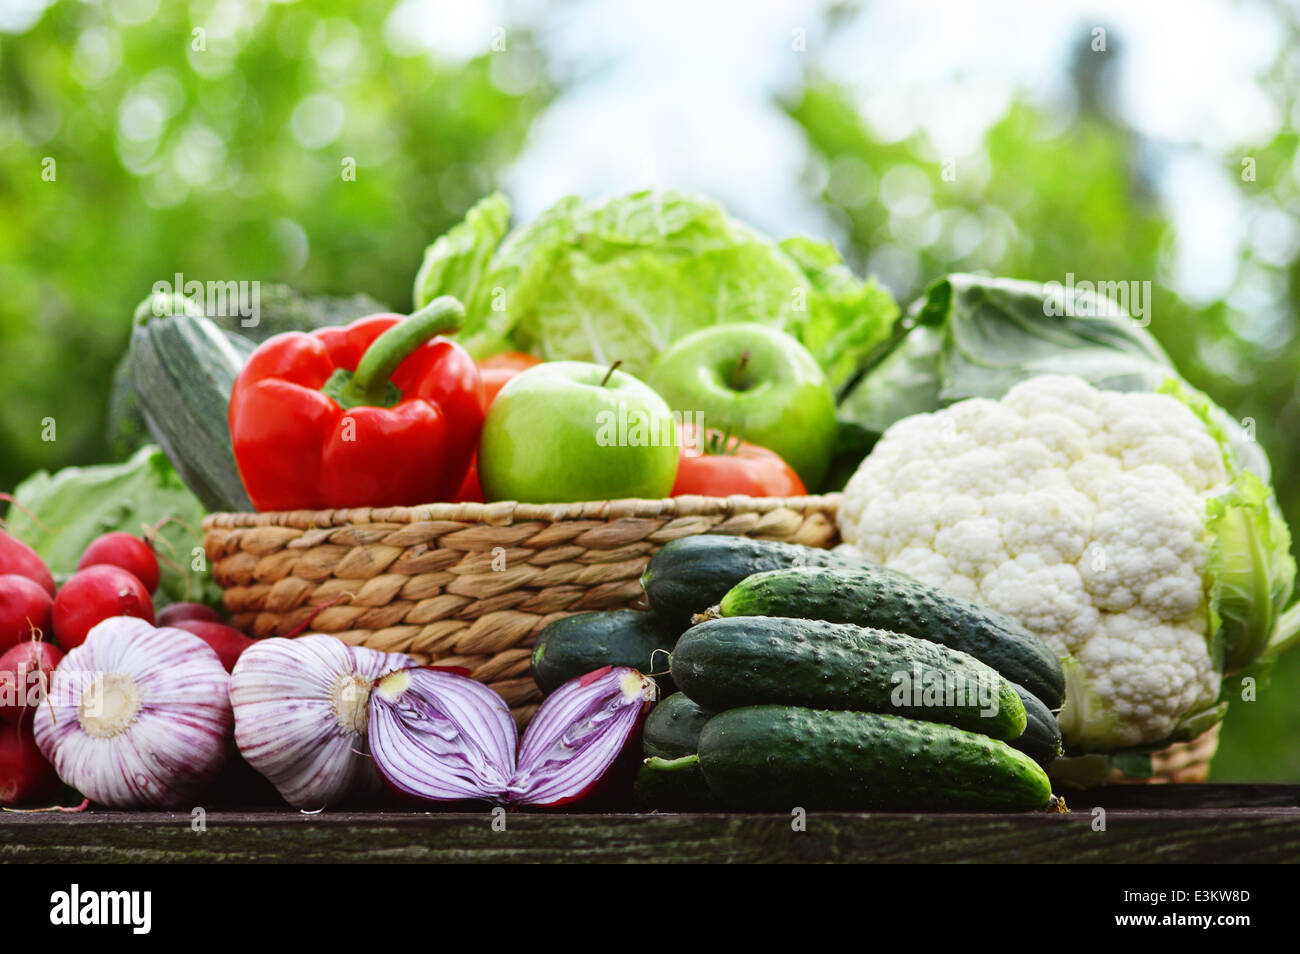 Fresche verdure organiche nel cesto di vimini in giardino Foto Stock